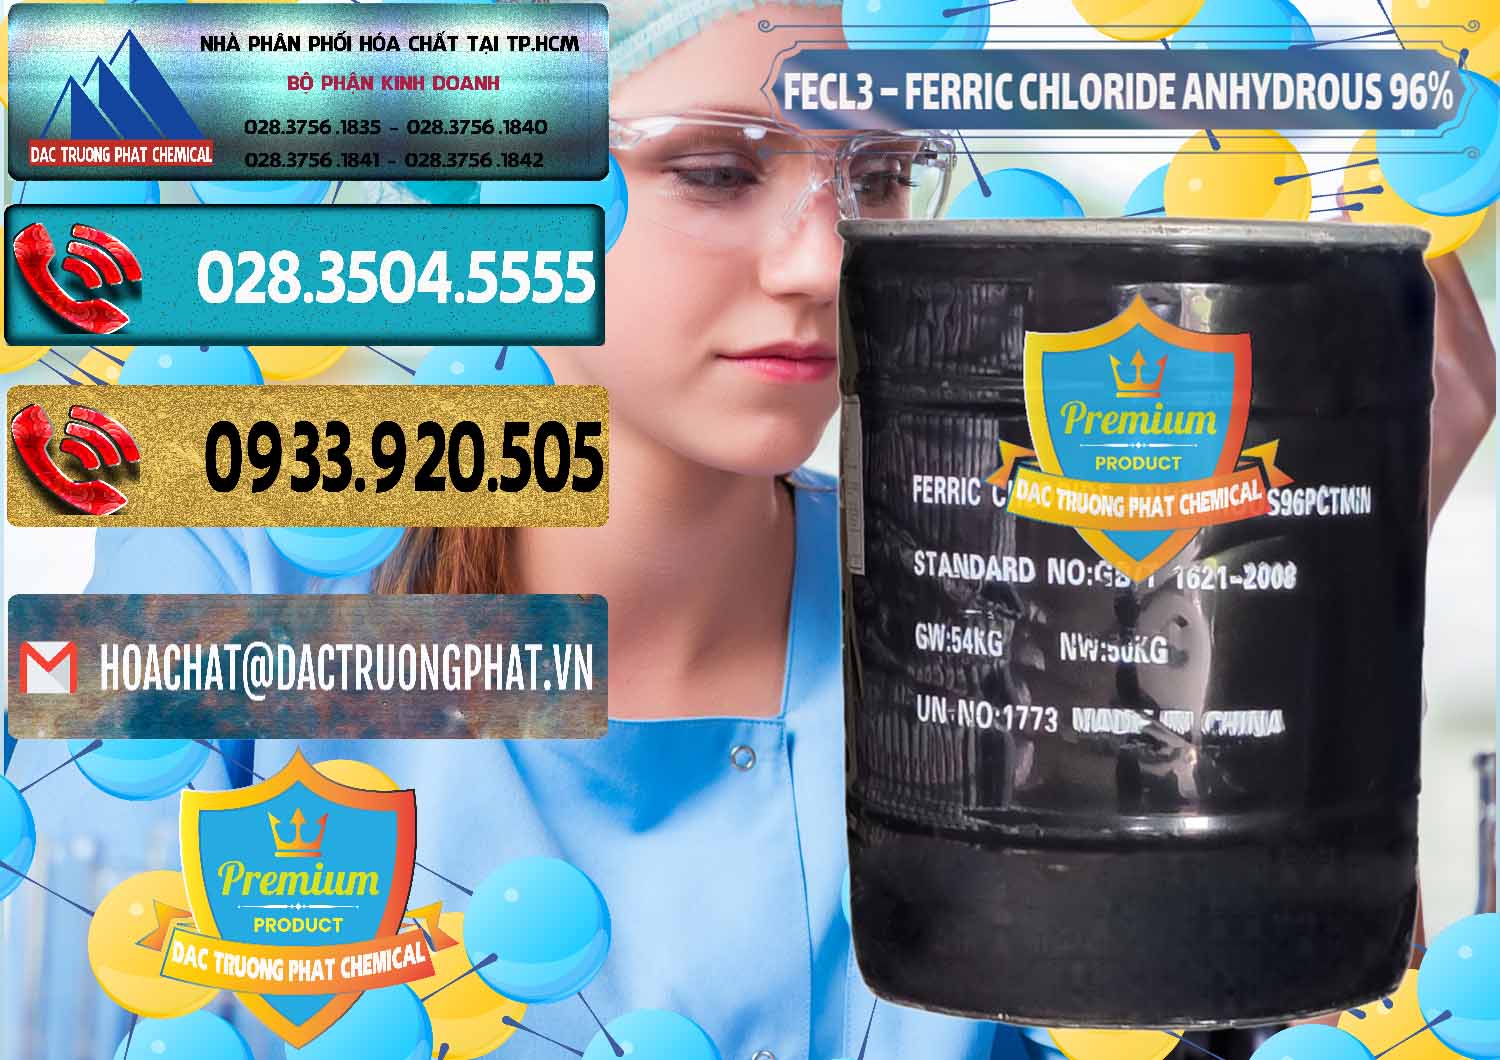 Công ty chuyên bán và phân phối FECL3 – Ferric Chloride Anhydrous 96% Trung Quốc China - 0065 - Cung cấp & nhập khẩu hóa chất tại TP.HCM - hoachatdetnhuom.com